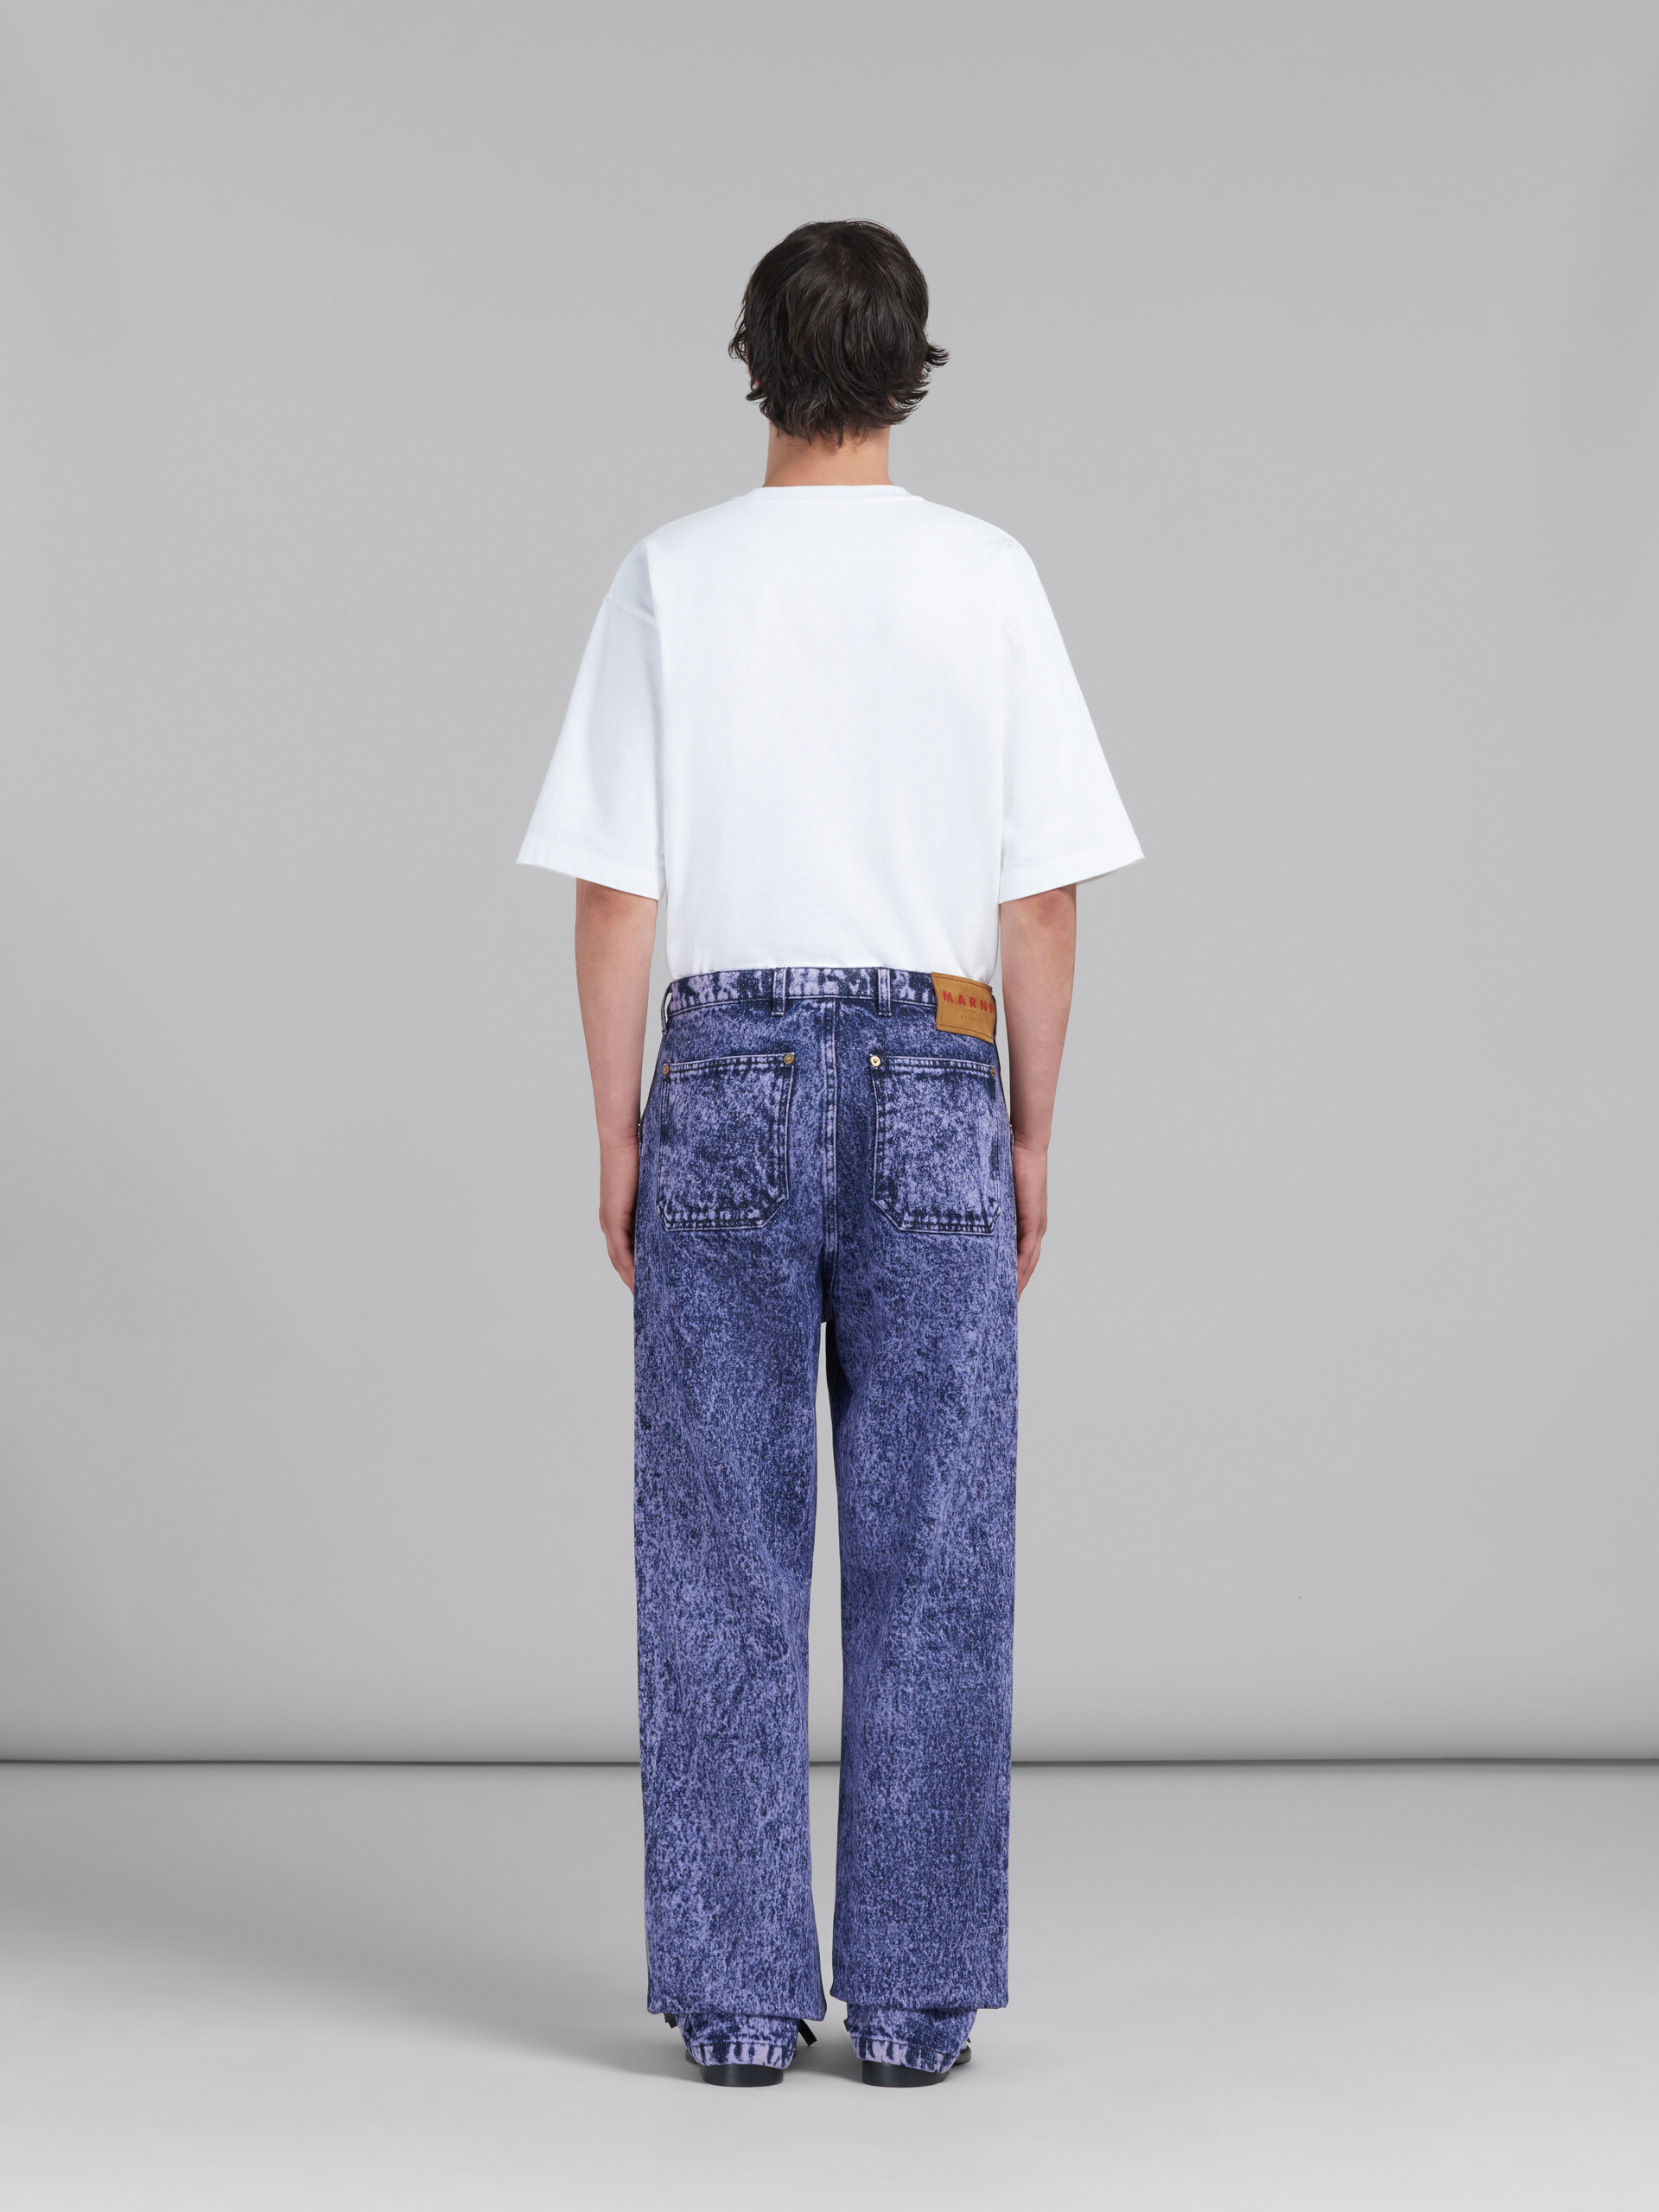 Pantalón de denim azul efecto mármol - Pantalones - Image 3